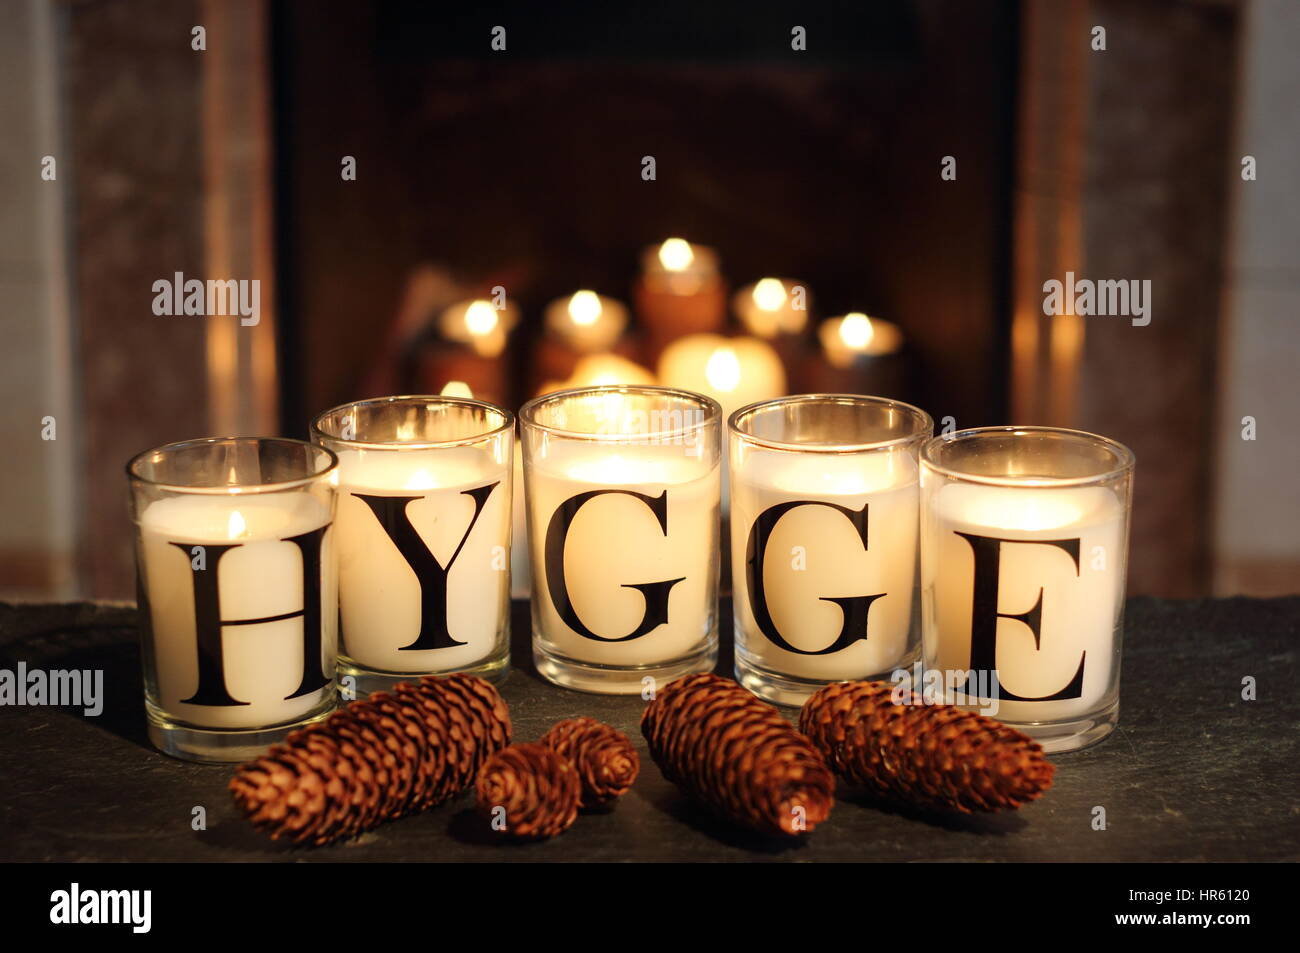 In einem englischen Haus im Winter am Kamin Kerzen zeigen "Hygge" - das  dänische Konzept der umfassenden gemütliche Zufriedenheit und Geselligkeit  Stockfotografie - Alamy